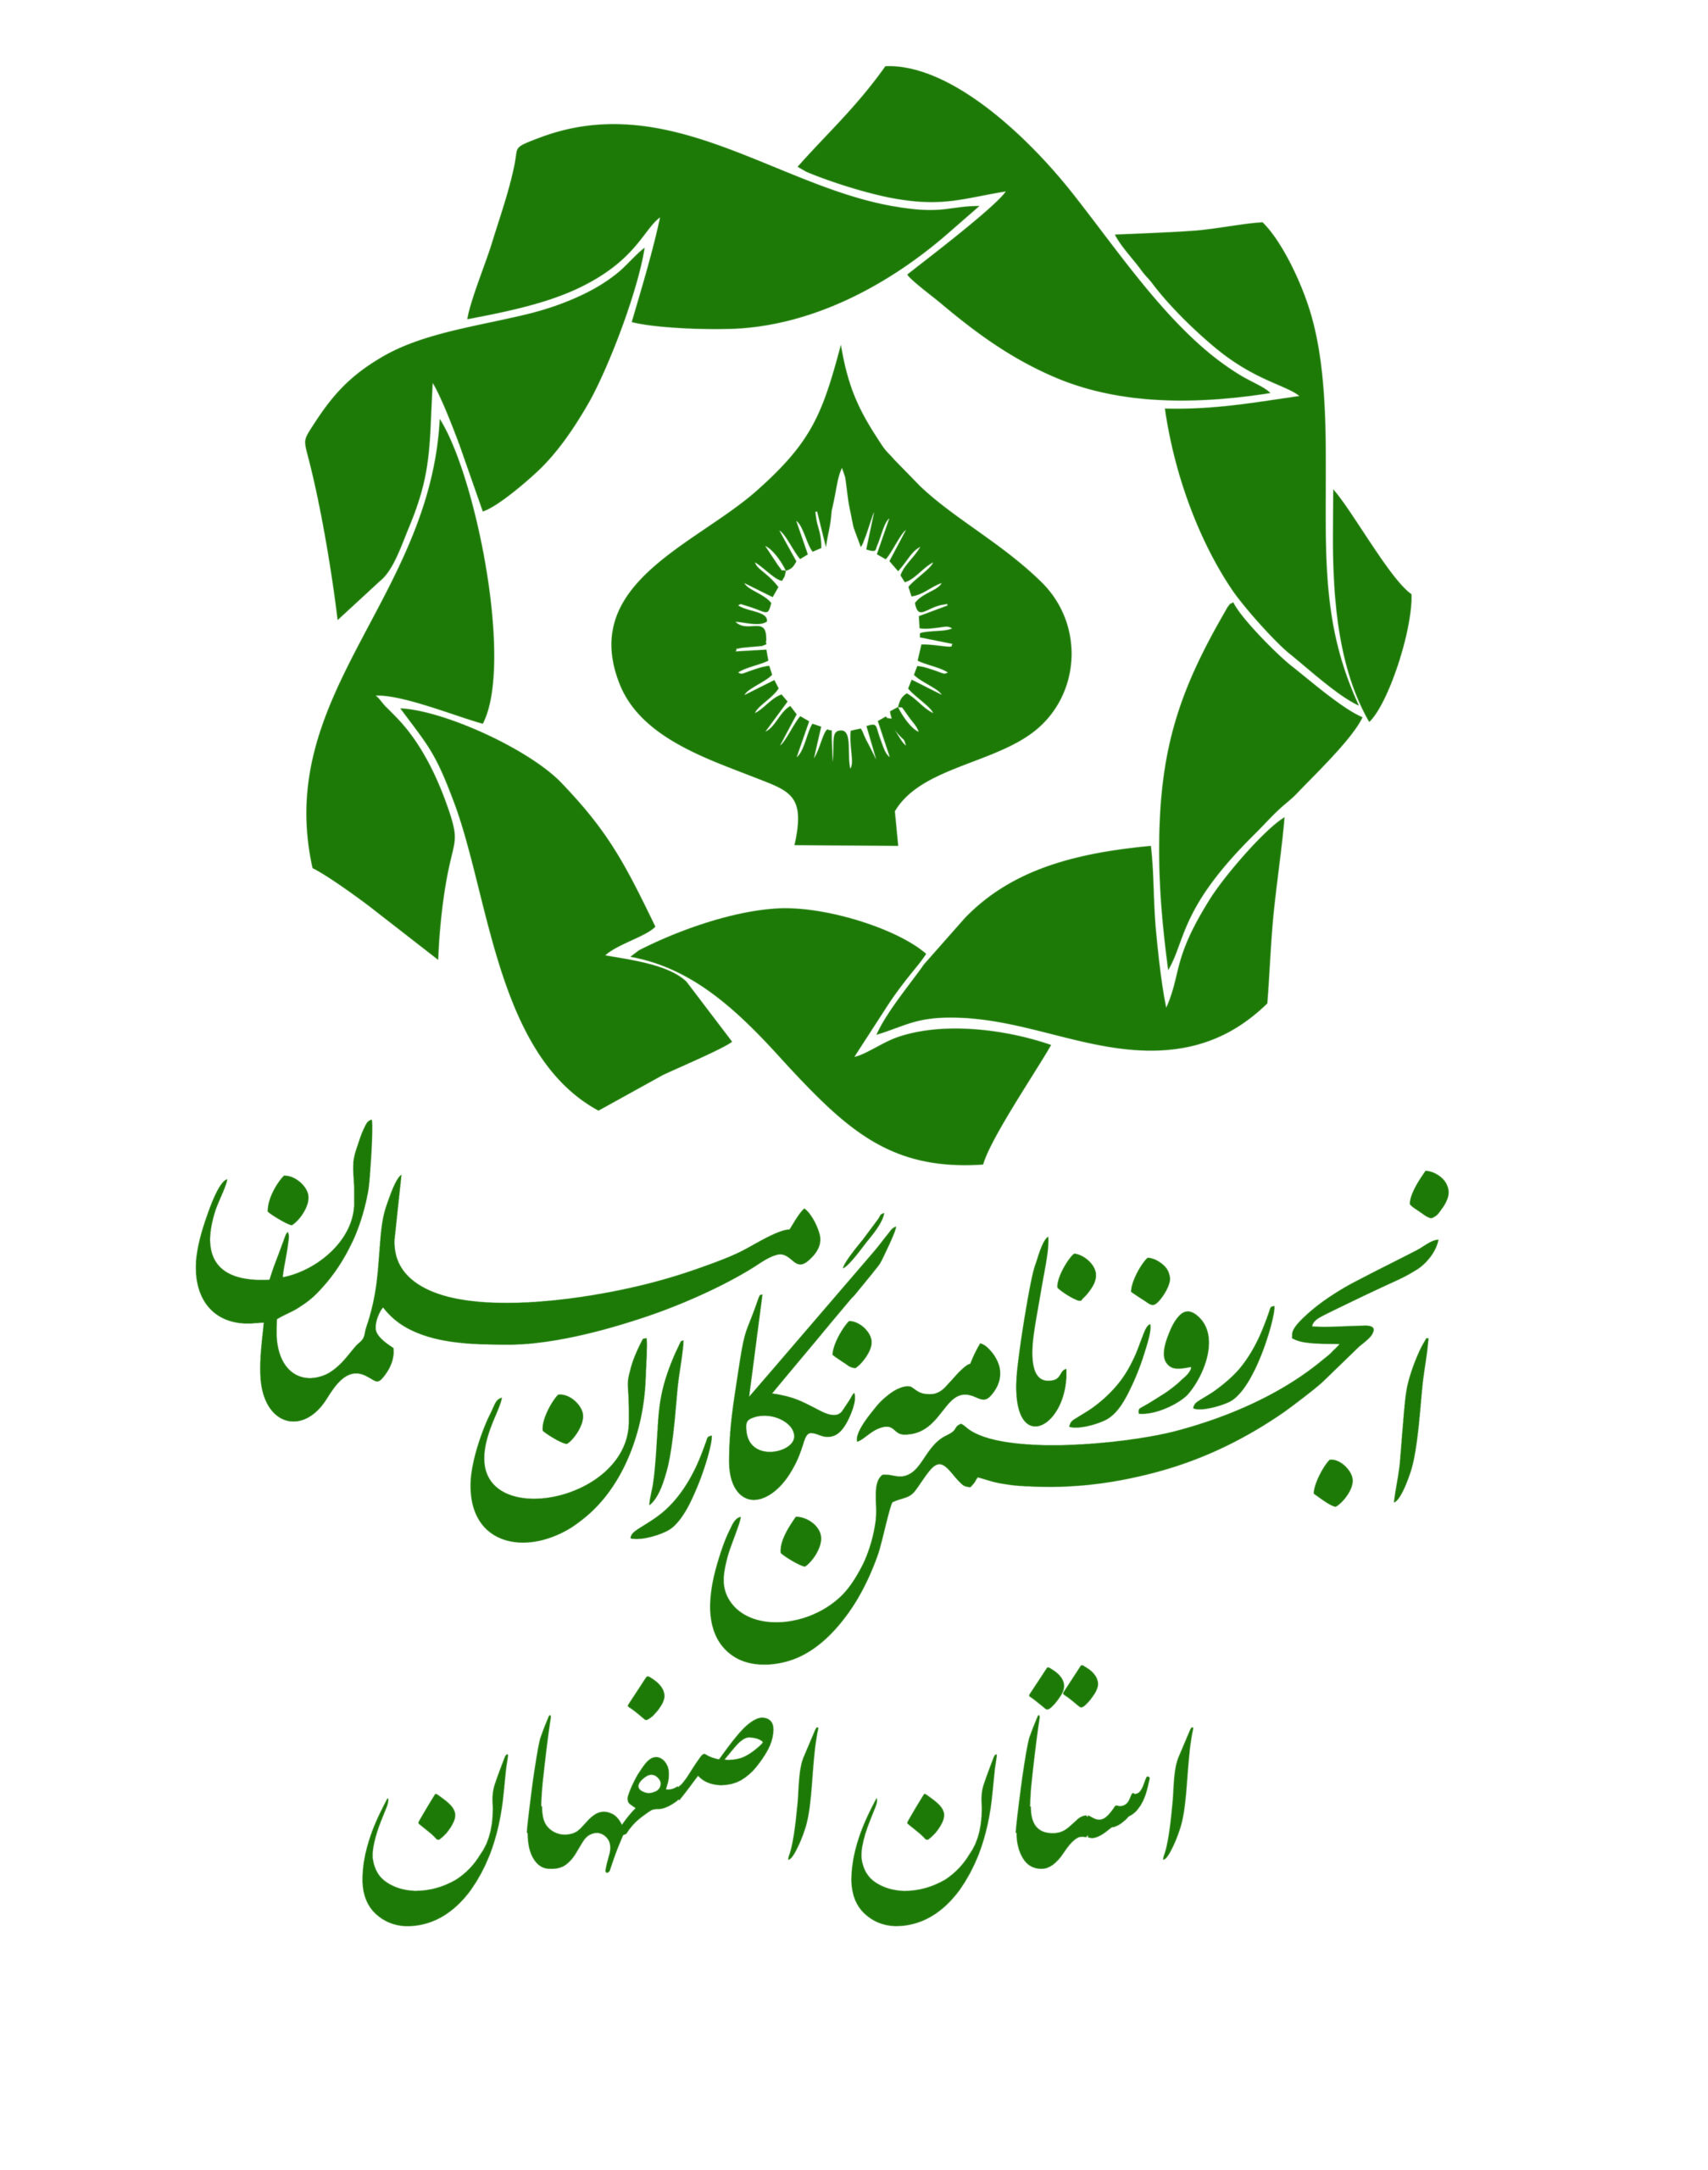 بیانه انجمن روزنامه نگاران مسلمان استان اصفهان به مناسبت روز خبرنگار